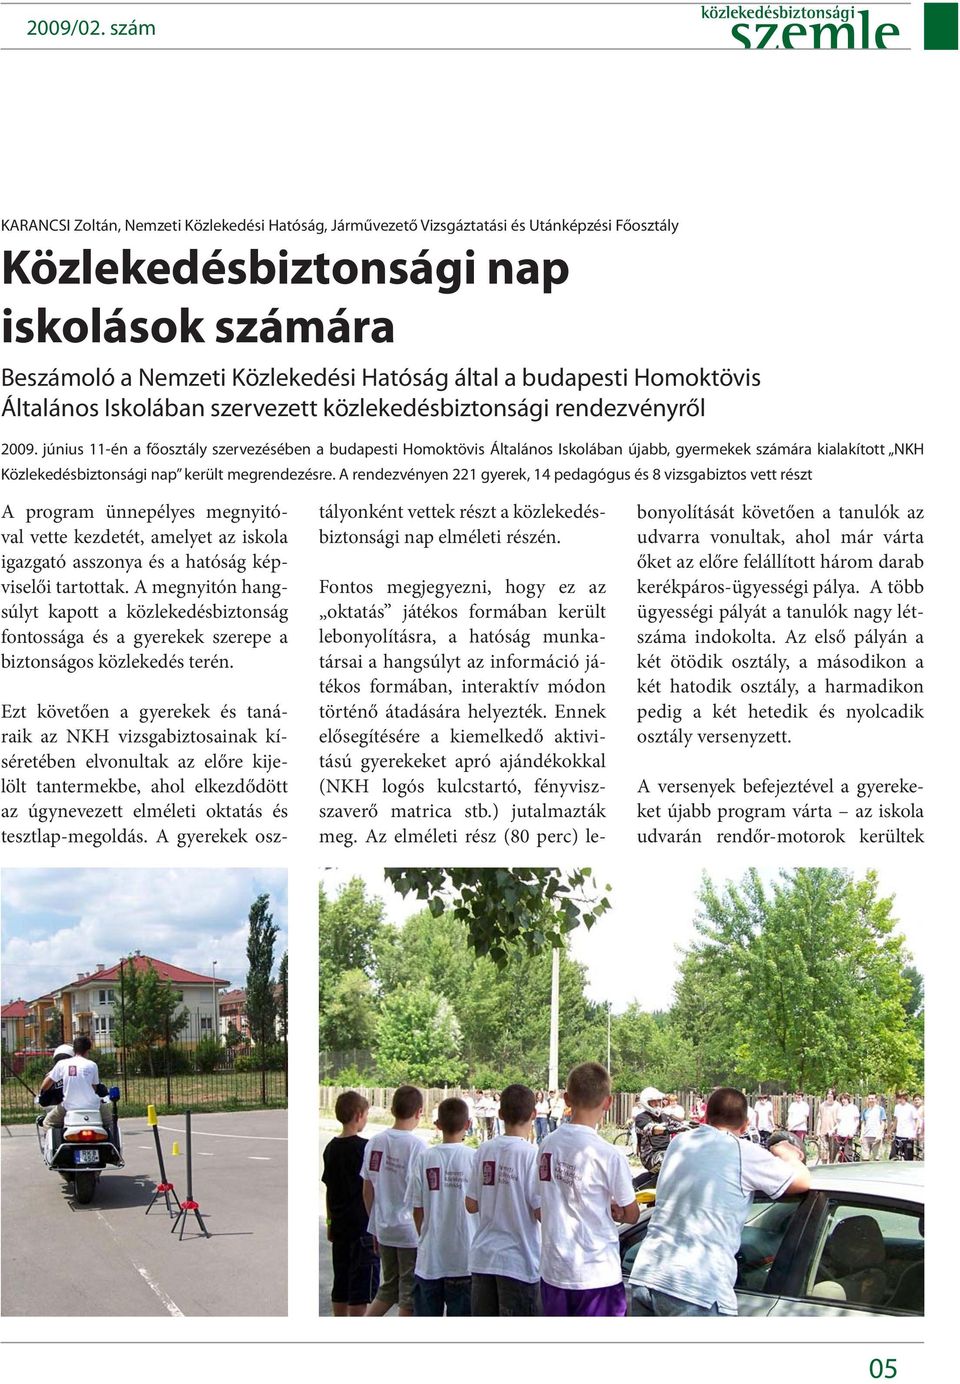 június 11-én a főosztály szervezésében a budapesti Homoktövis Általános Iskolában újabb, gyermekek számára kialakított NKH Közlekedésbiztonsági nap került megrendezésre.